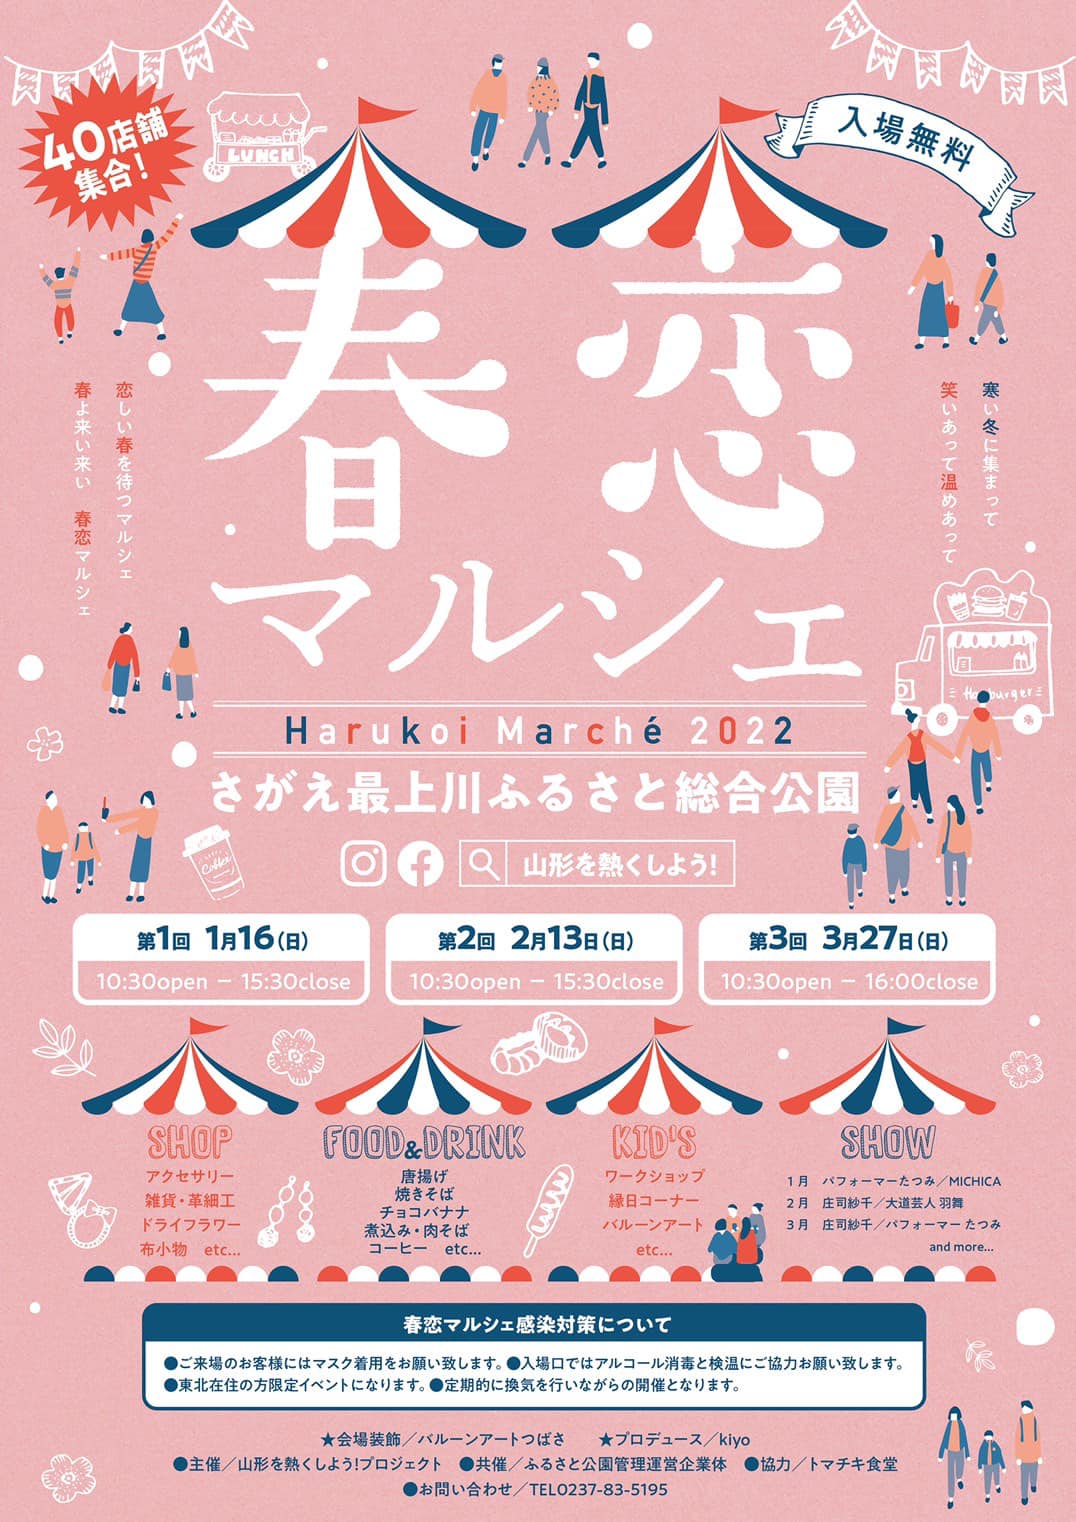 【イベント情報3/27】春恋マルシェが開催されるようです！